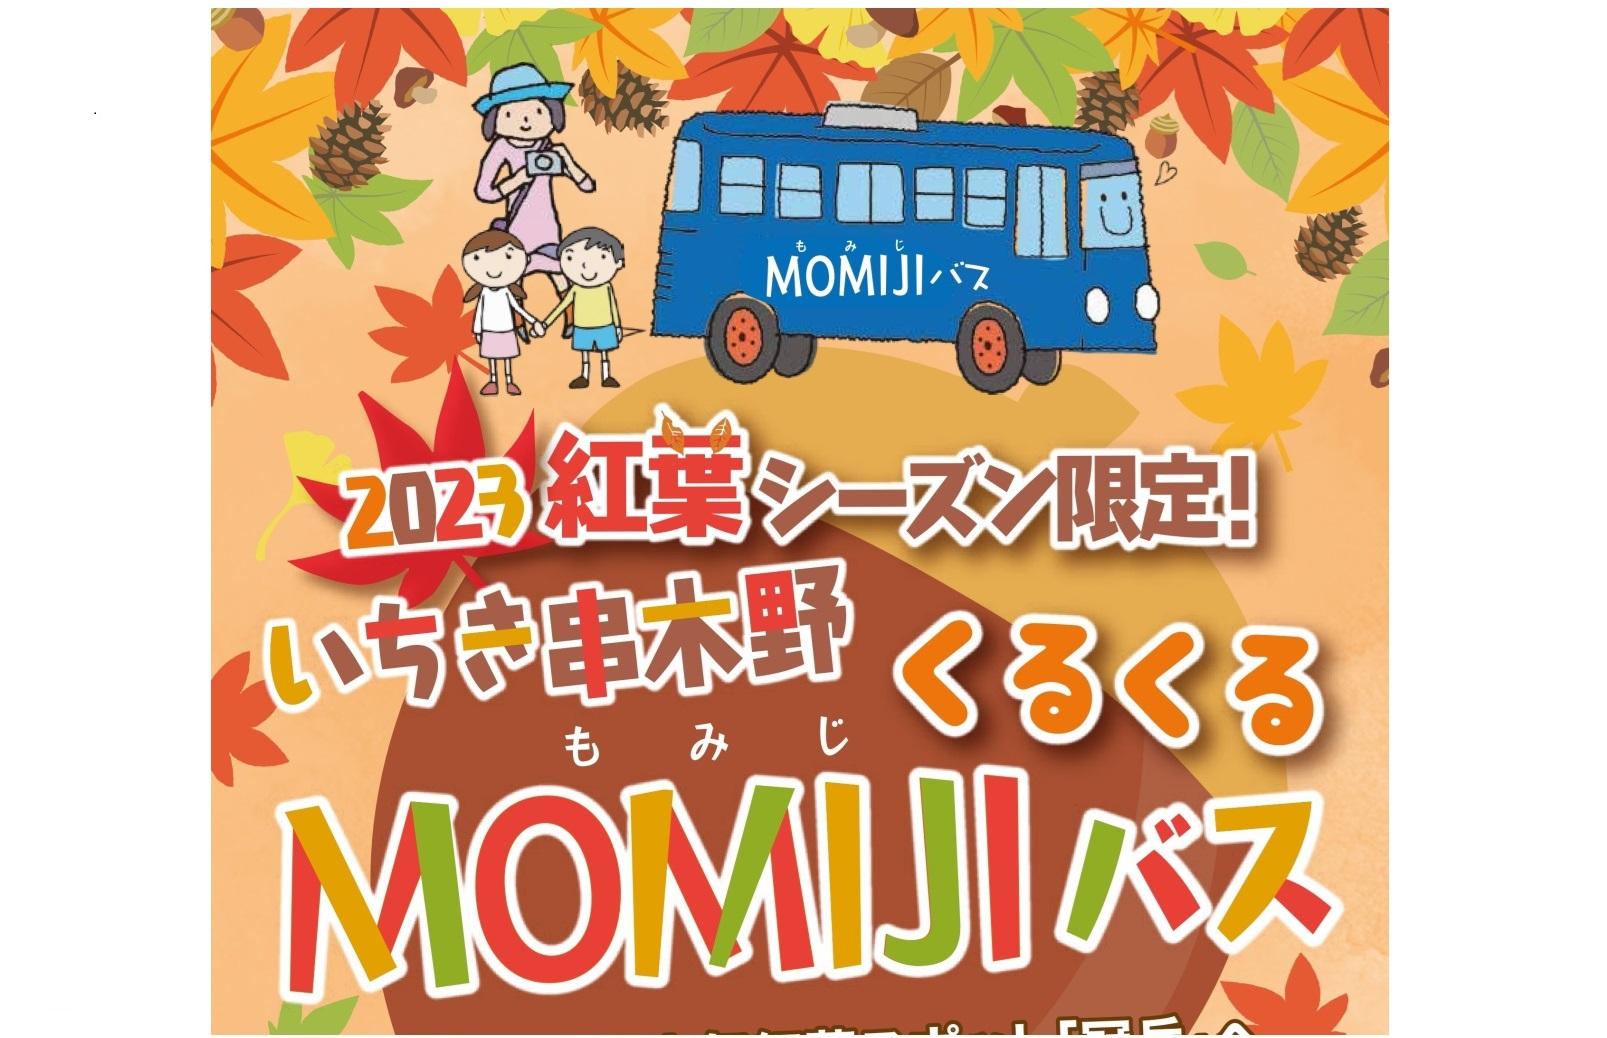 くるくるMOMIJIバス-1